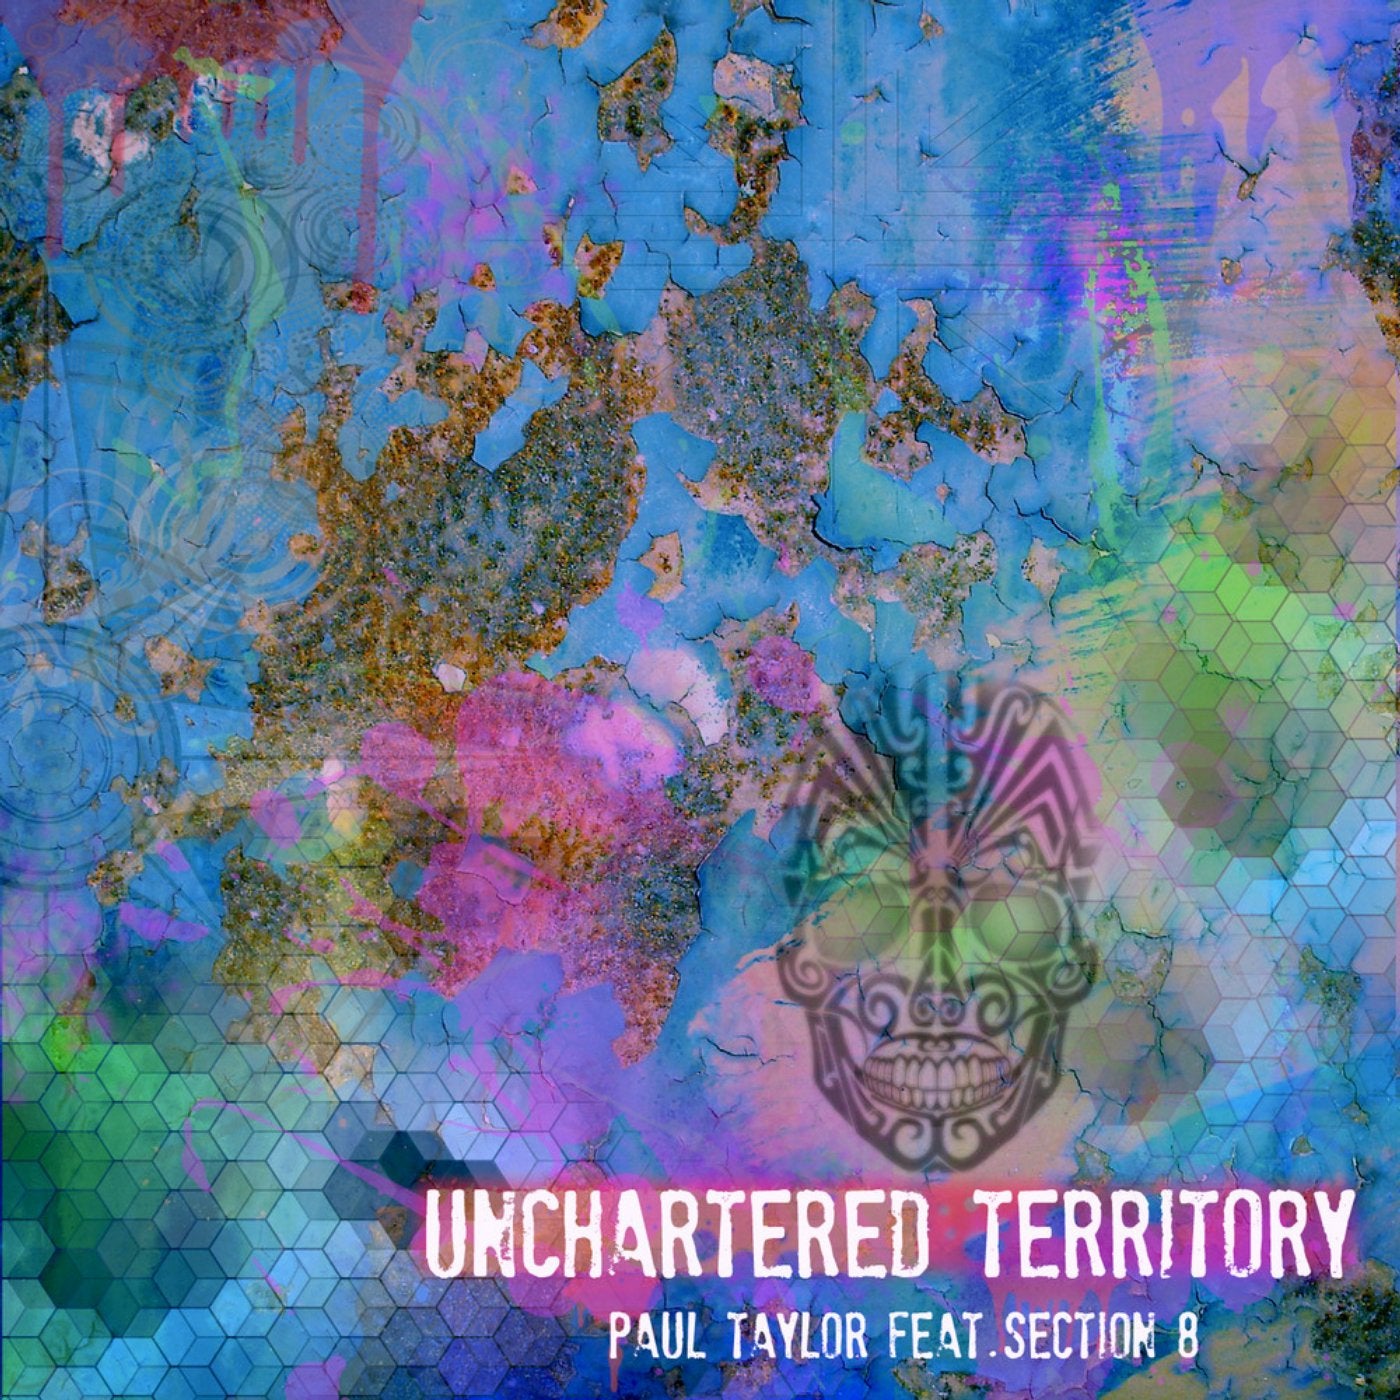 Unchartered Territory